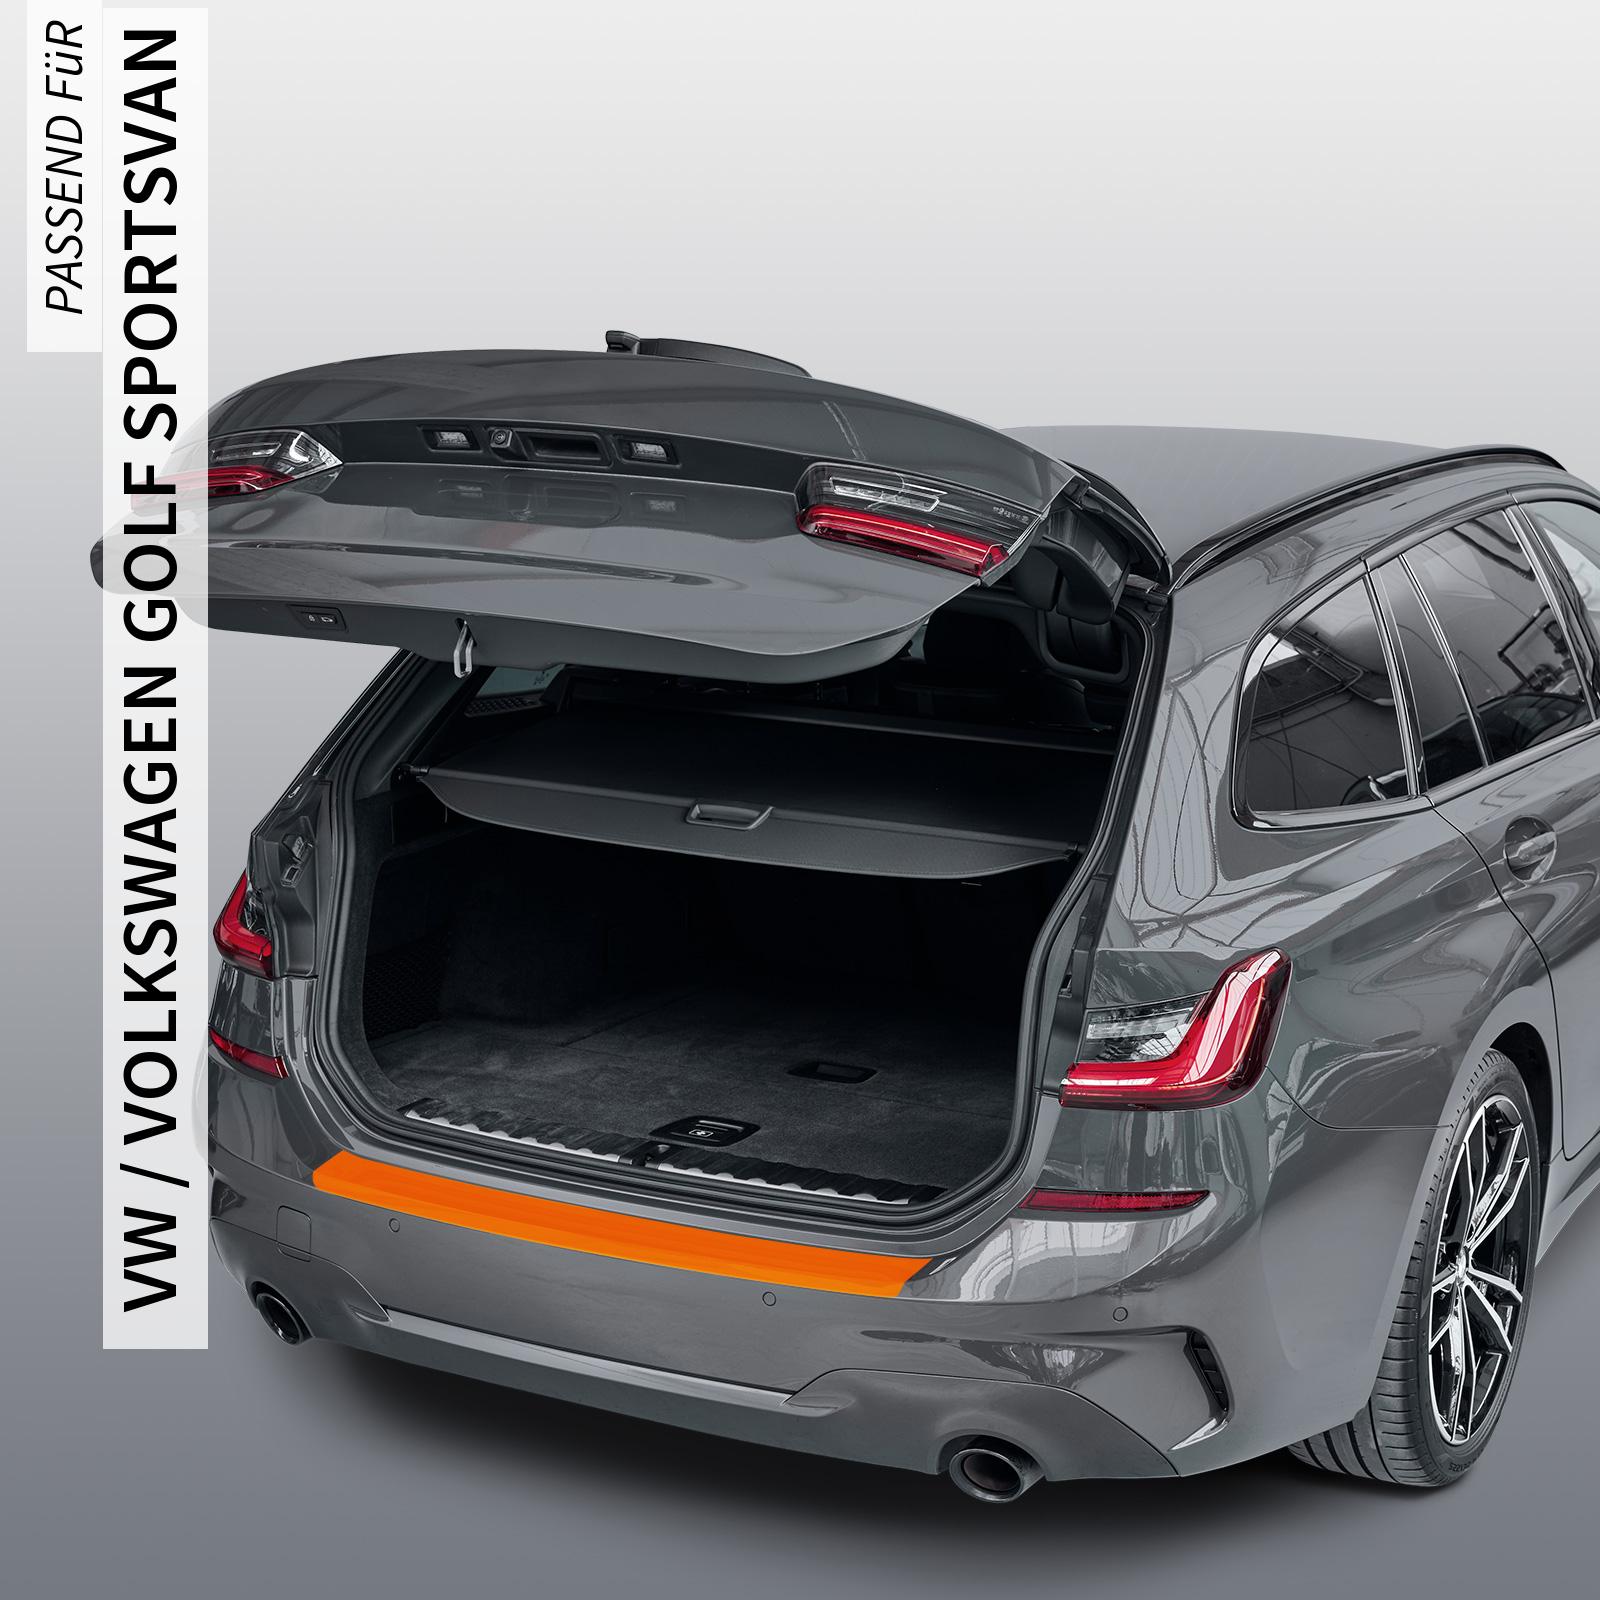 Ladekantenschutzfolie - Transparent Glatt MATT 110 µm stark  für VW / Volkswagen Golf Sportsvan ab BJ 04/2014